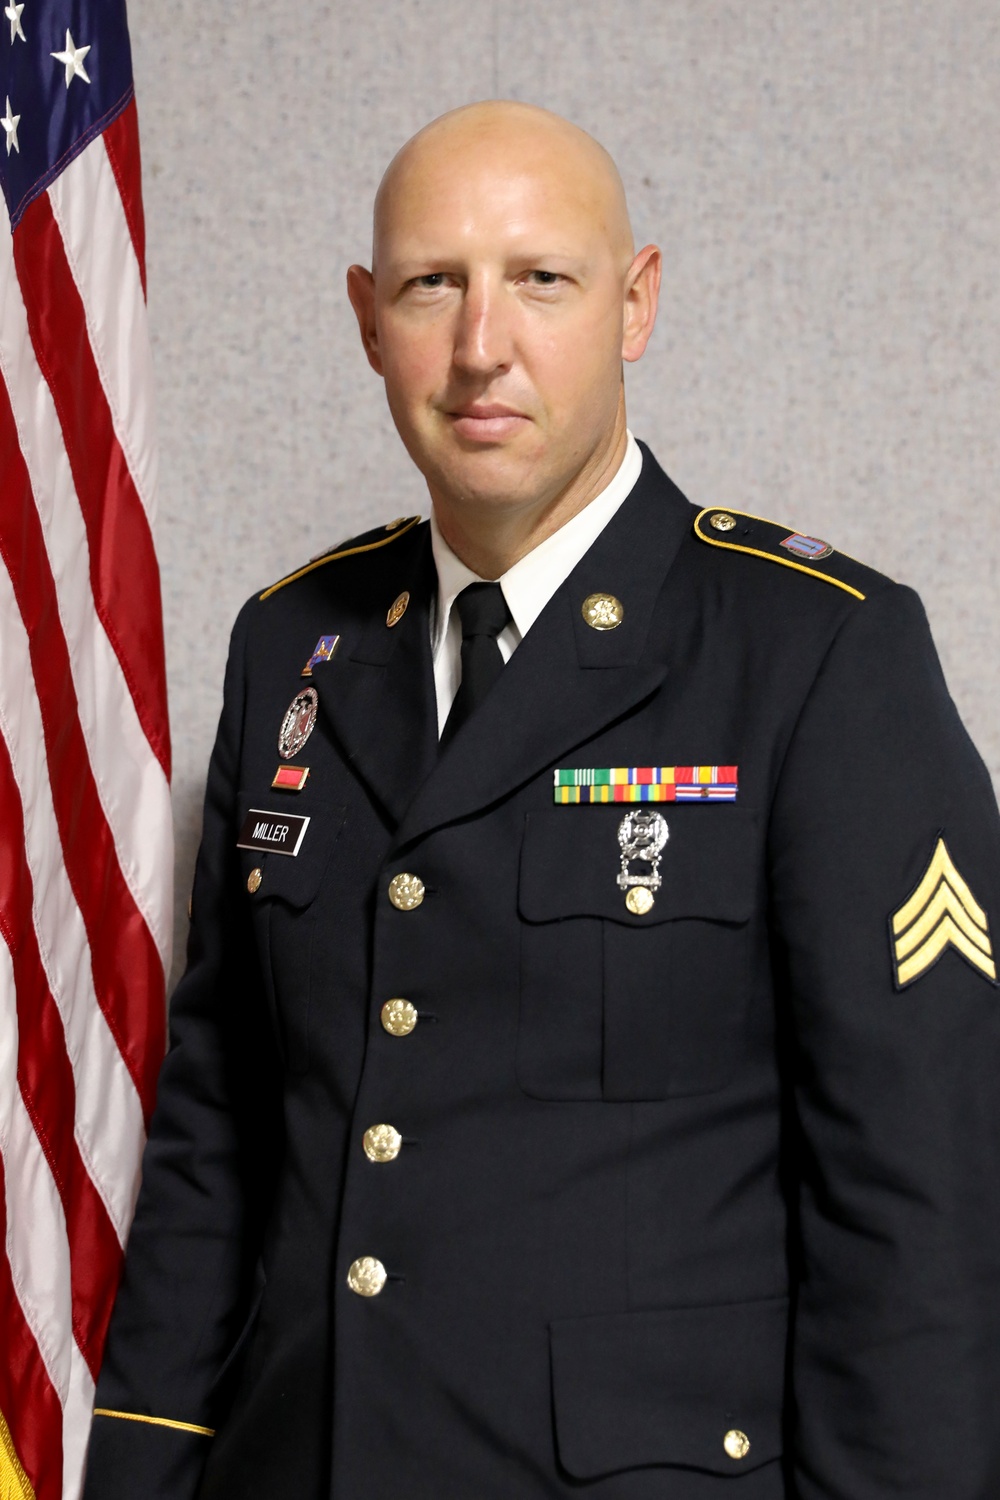 Sgt. Miller